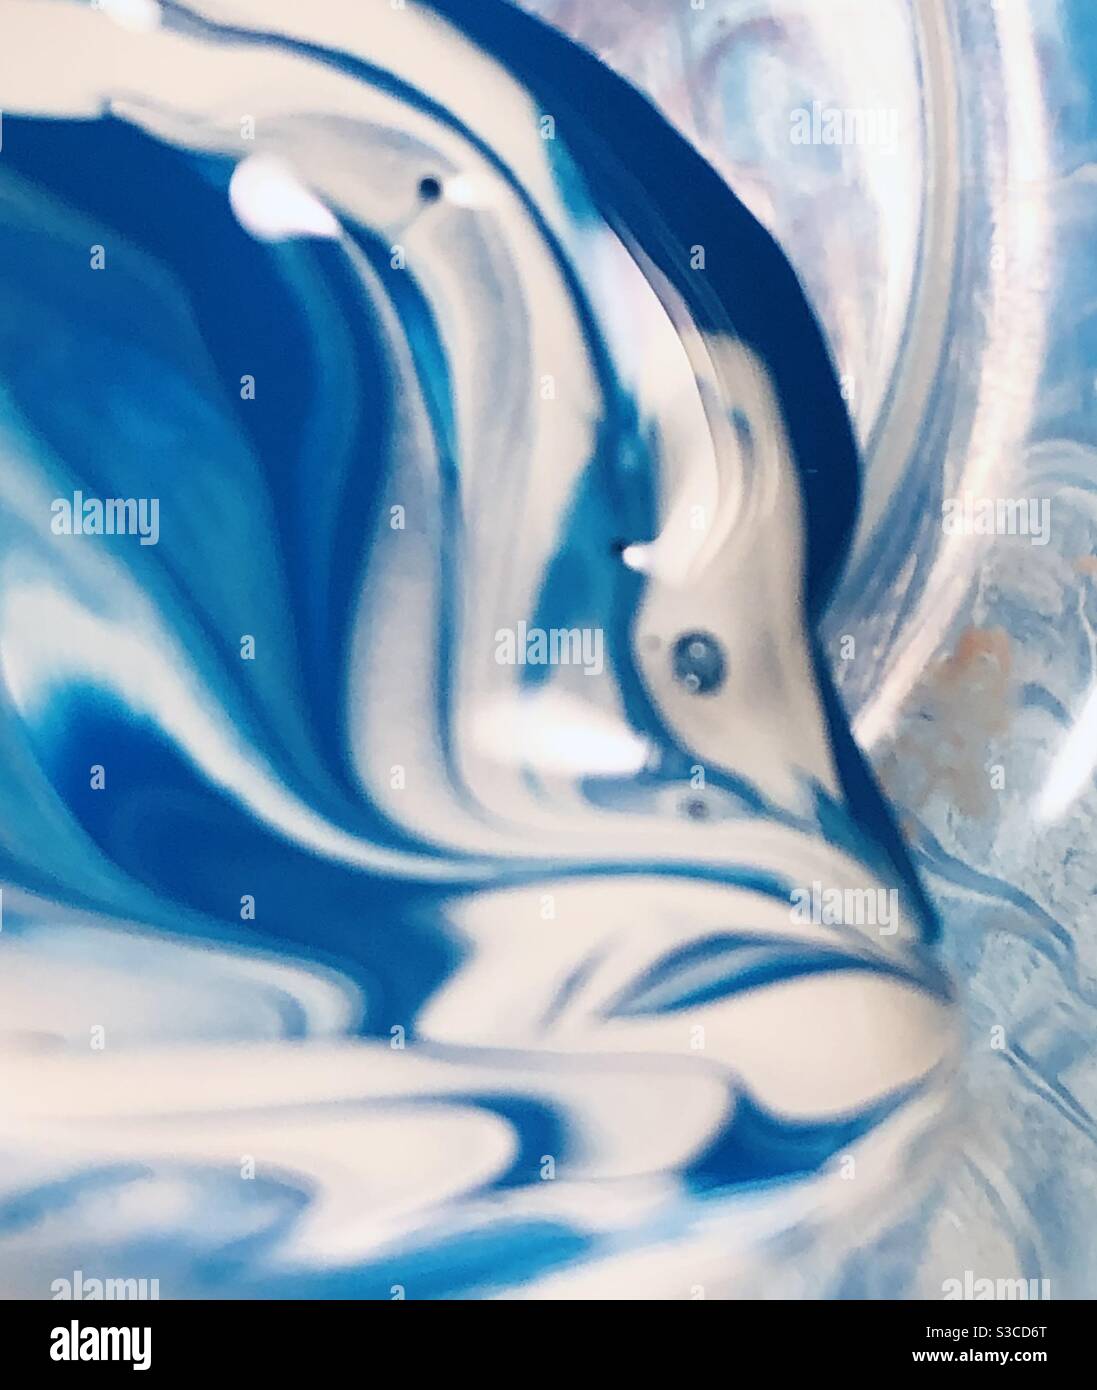 Un simple mélange de peinture bleue et blanche crée un arrière-plan de la tête de poisson Banque D'Images